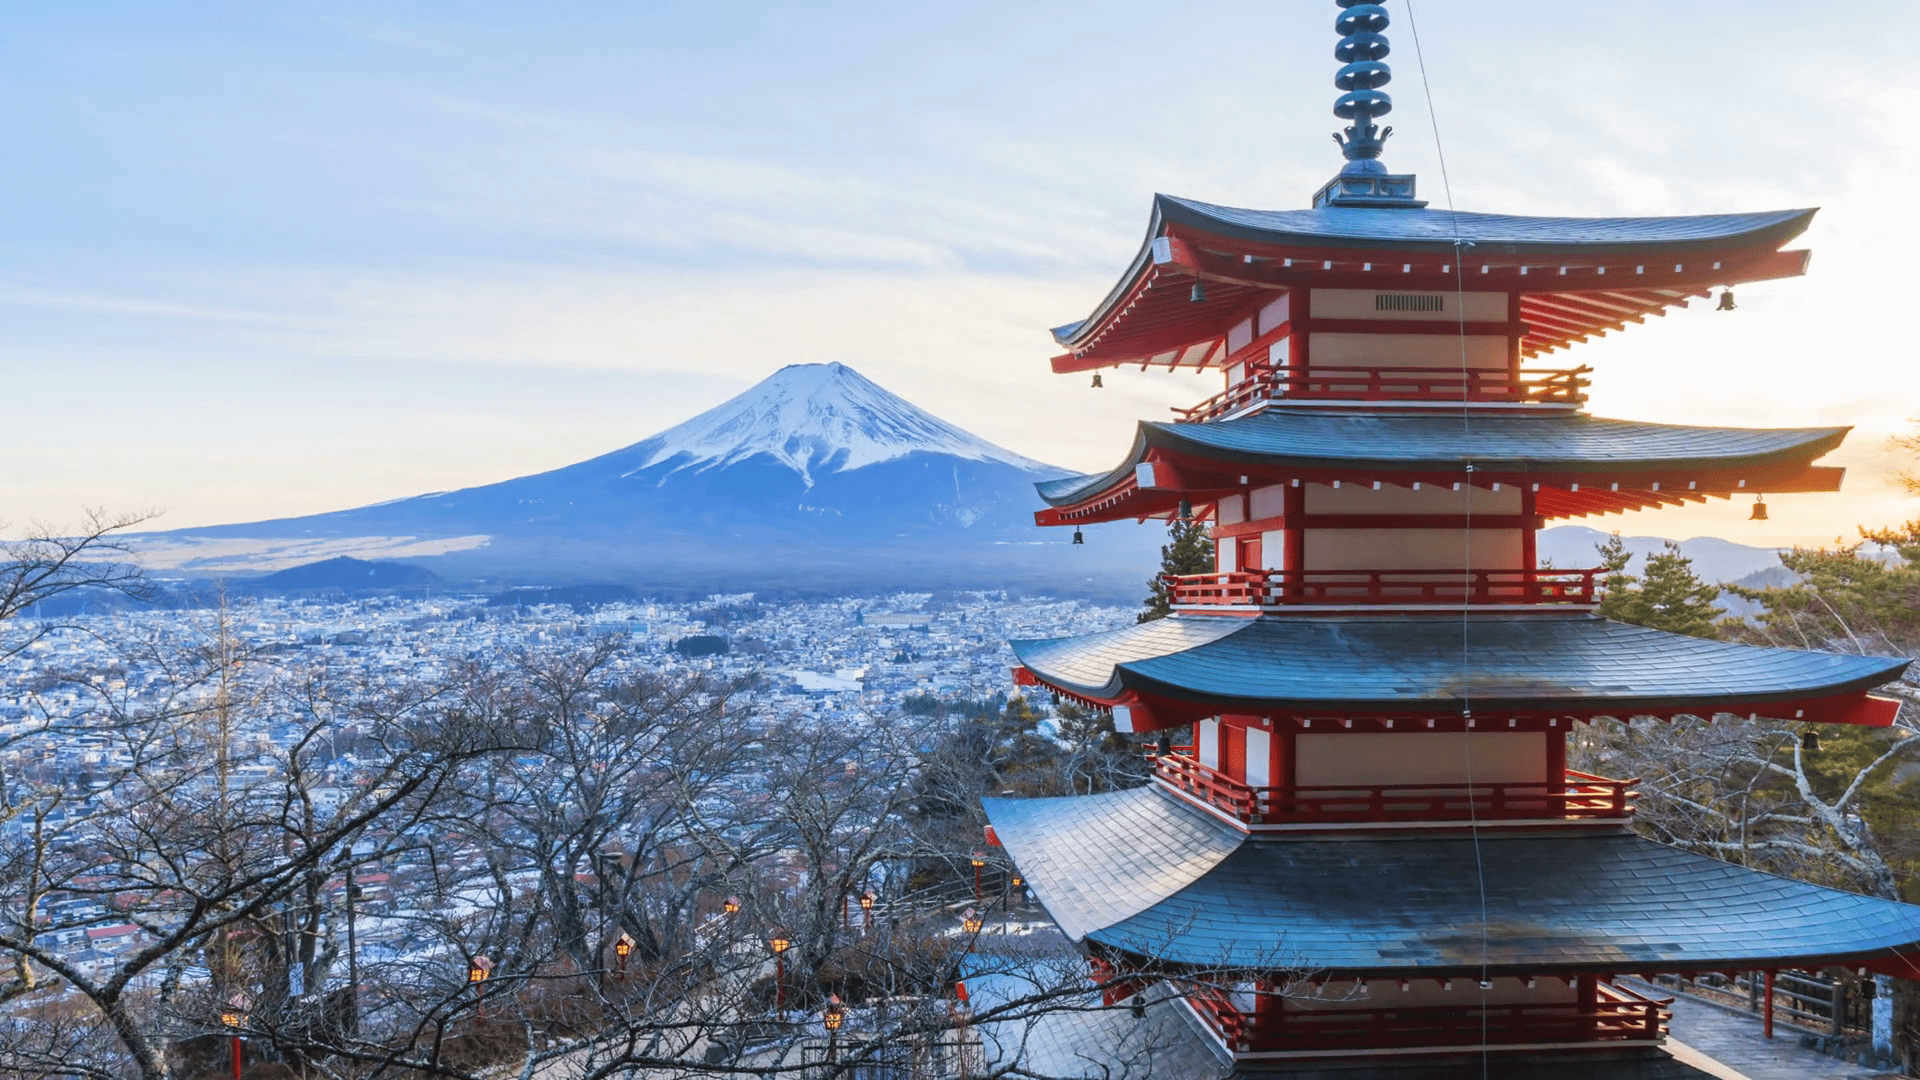 Winter Mt. Fuji Wallpaper